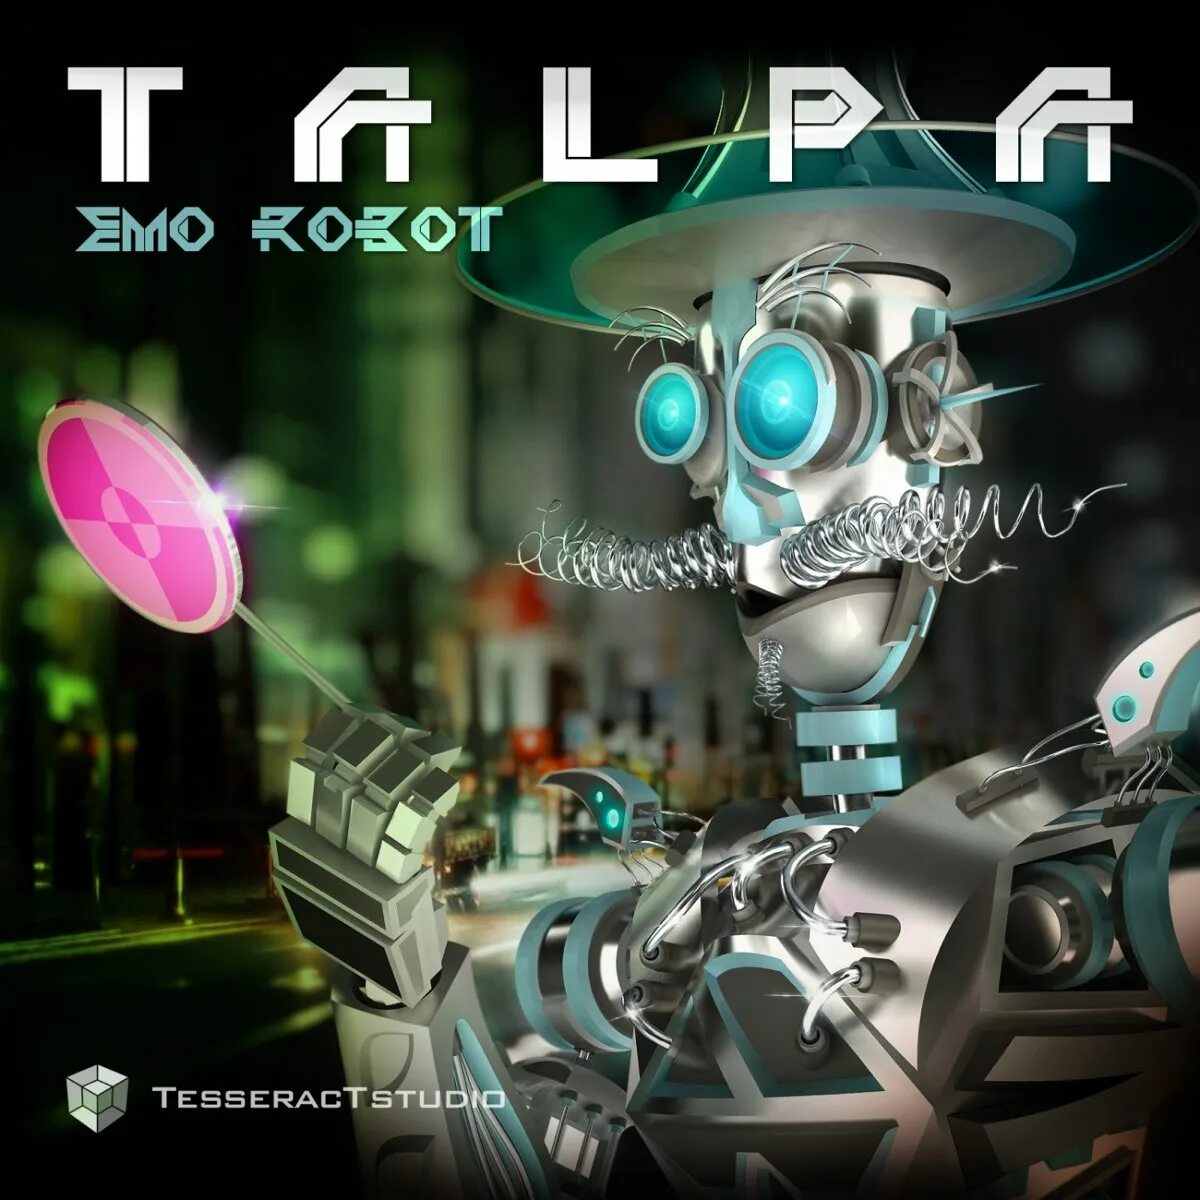 Робот эмо русский язык. Робот емо. Робот эмо. 2014 - Talpa - emo Robot [Ep]. Emo робот купить.